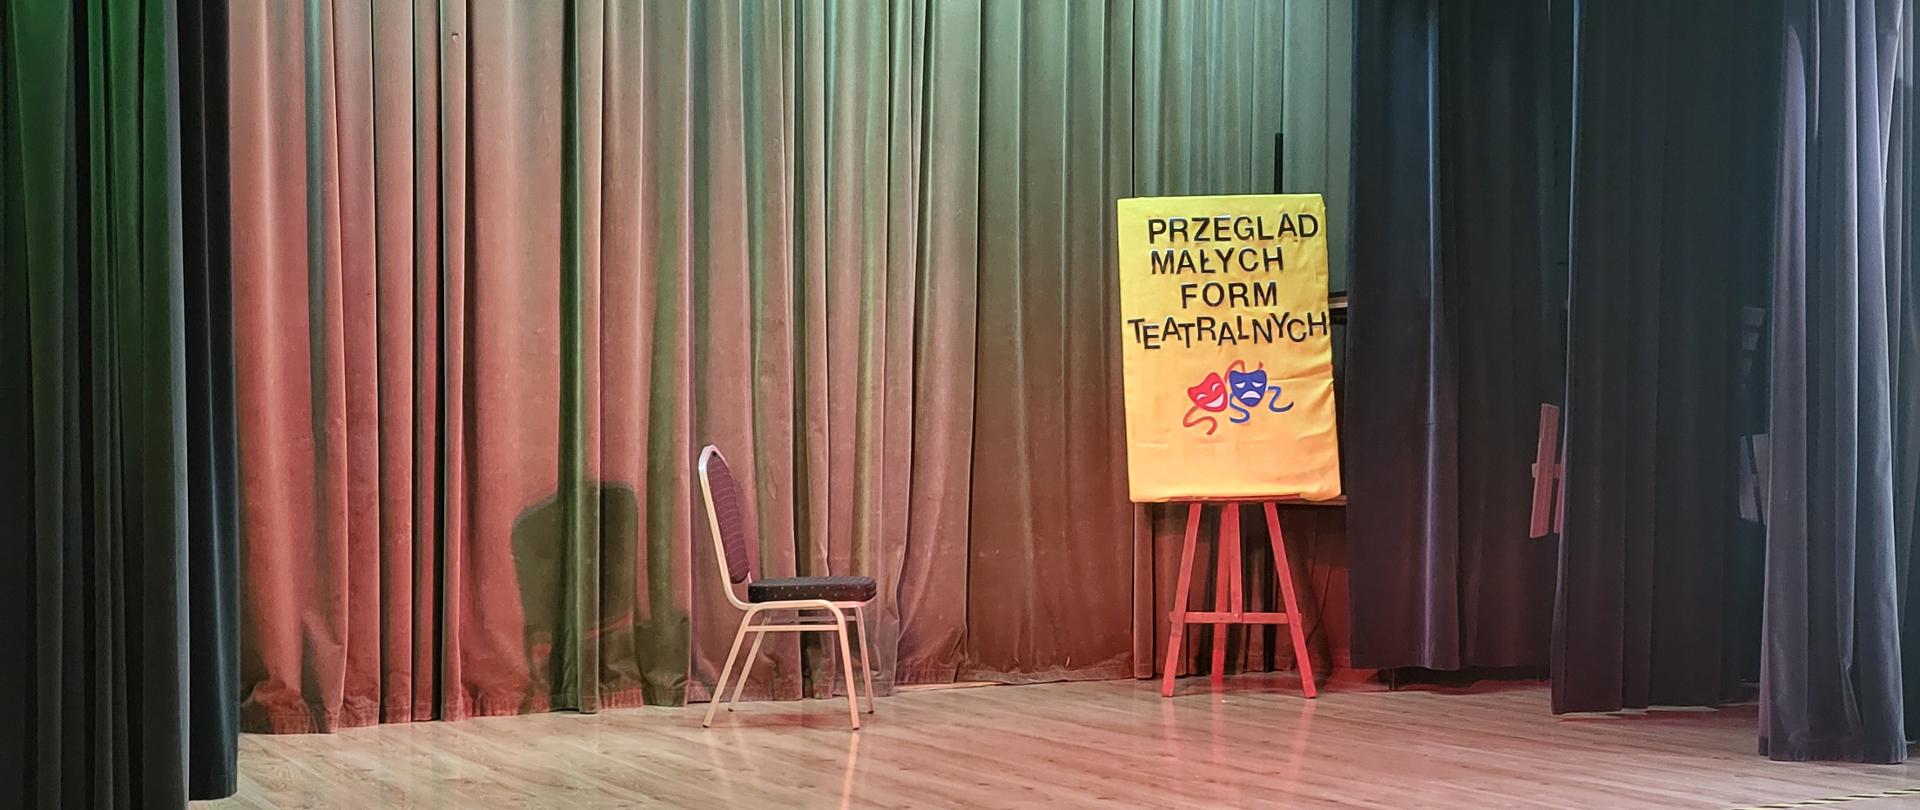 Na pustej scenie krzesło i napis Przegląd Małych Form Teatralnych